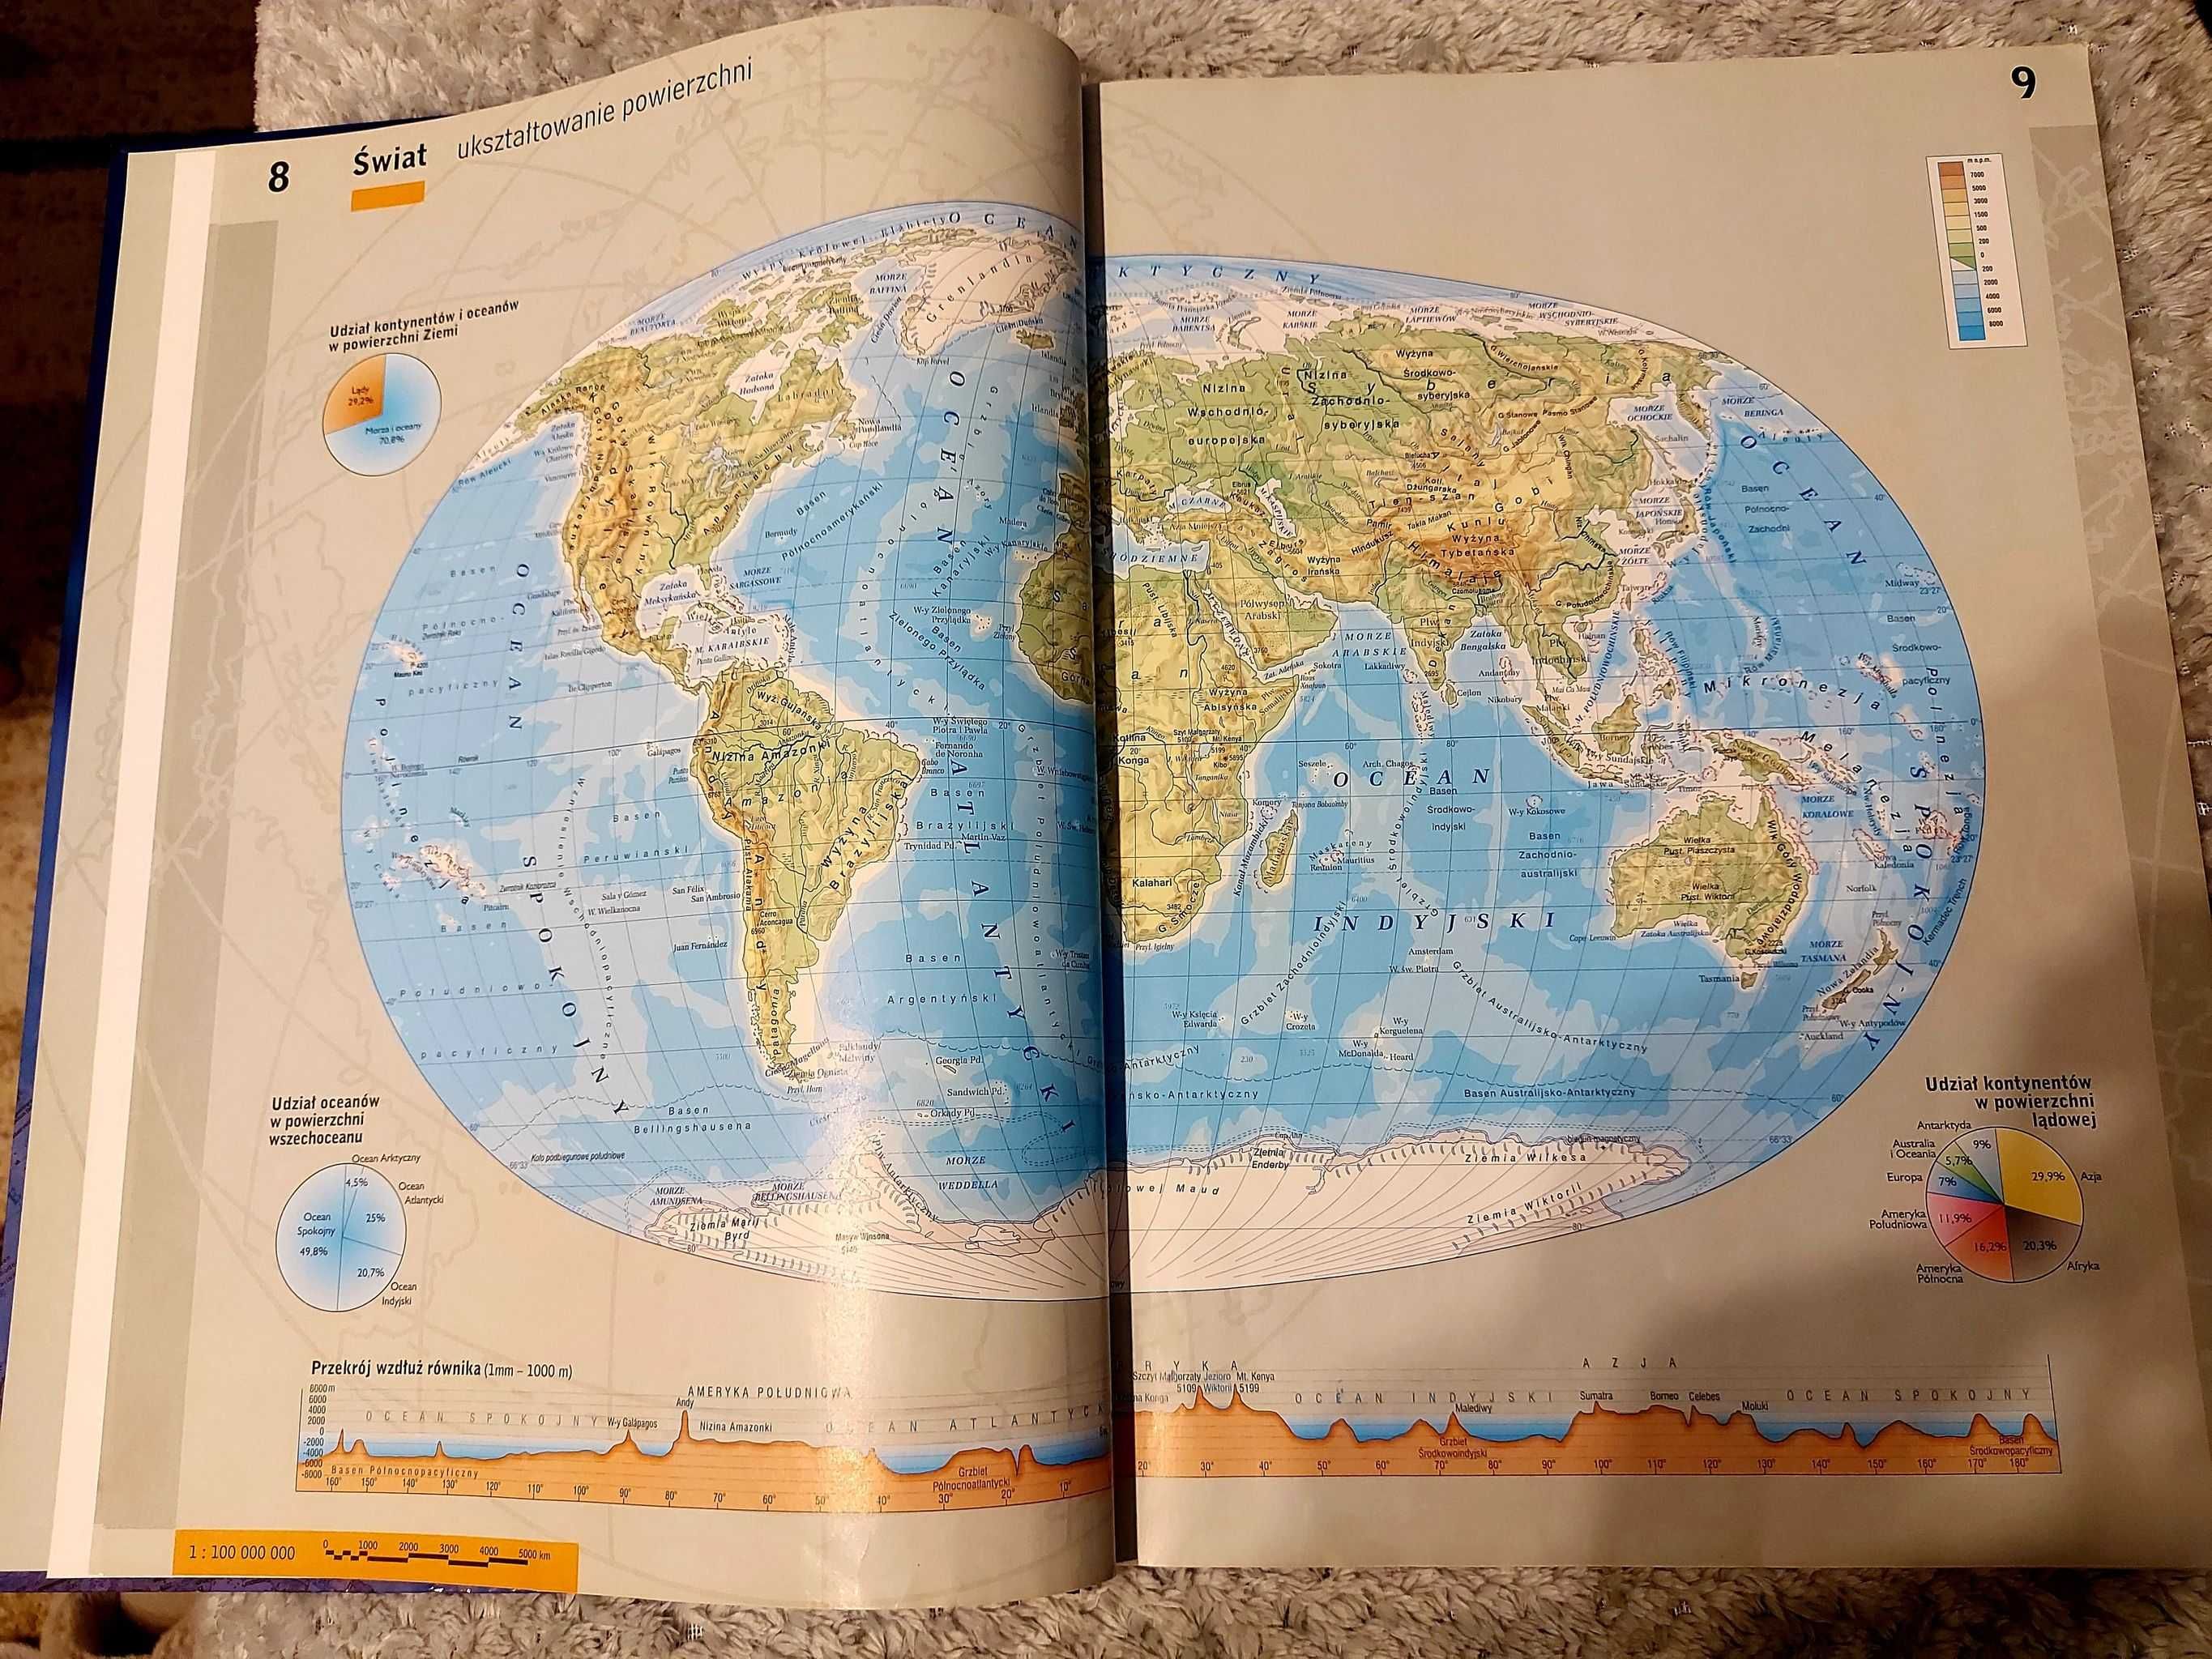 Wielki Atlas Świata (Wydawnictwo Demart 2006)